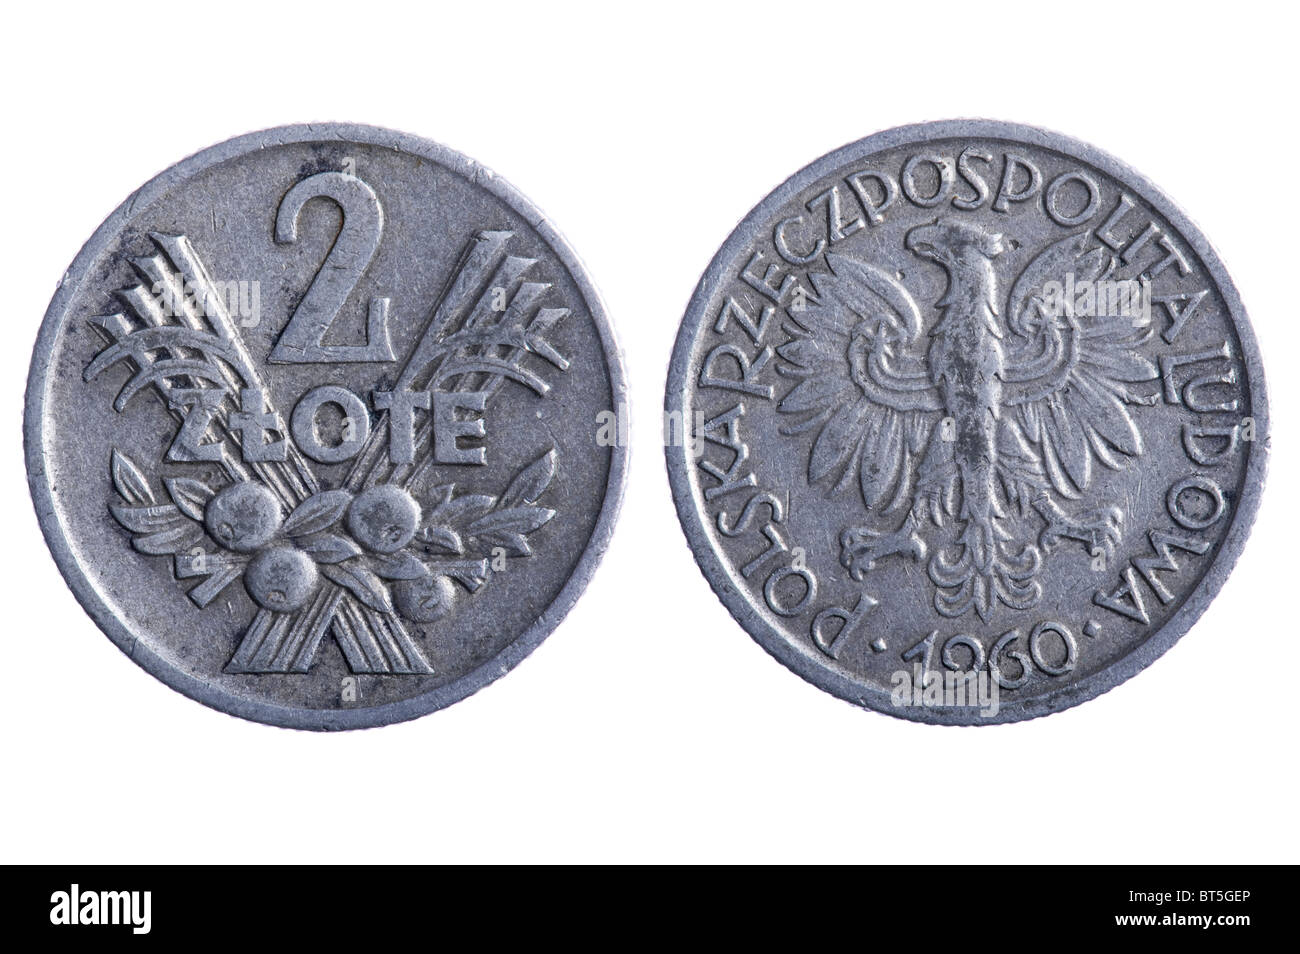 Objekt auf weiß - Spanien Münzen hautnah Stockfoto